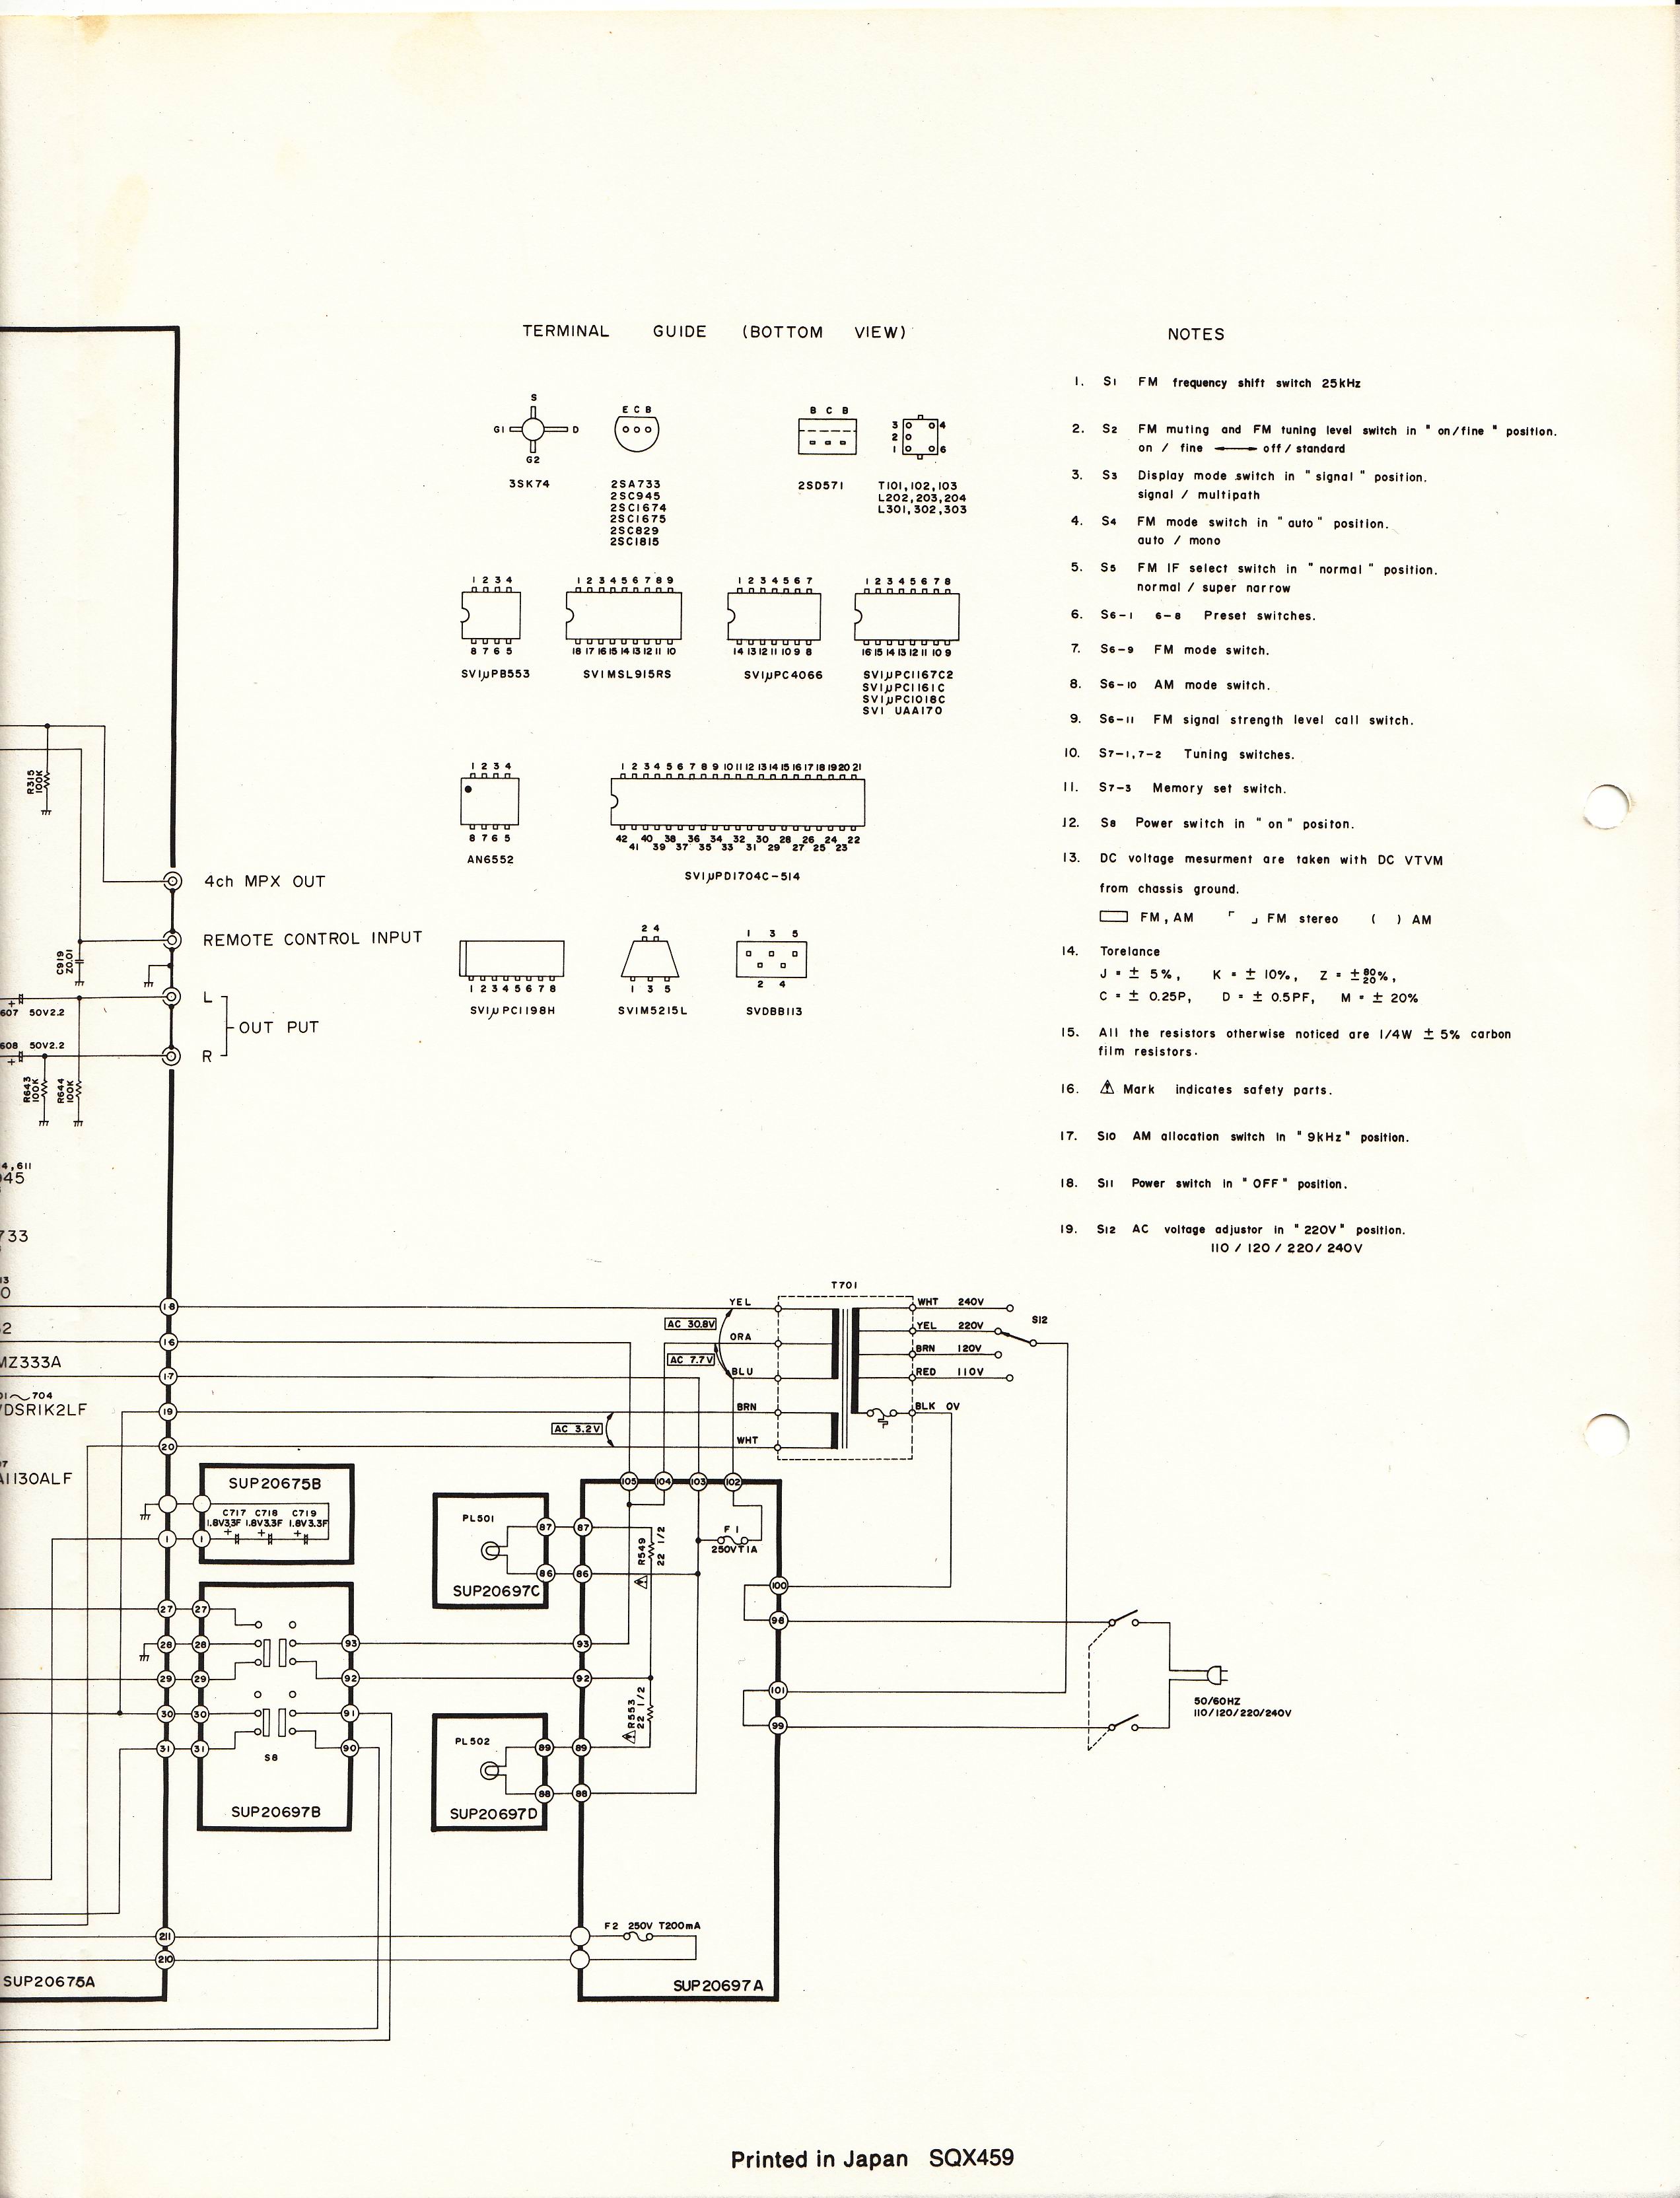 Schematic Diagram ST-S8 04.jpg